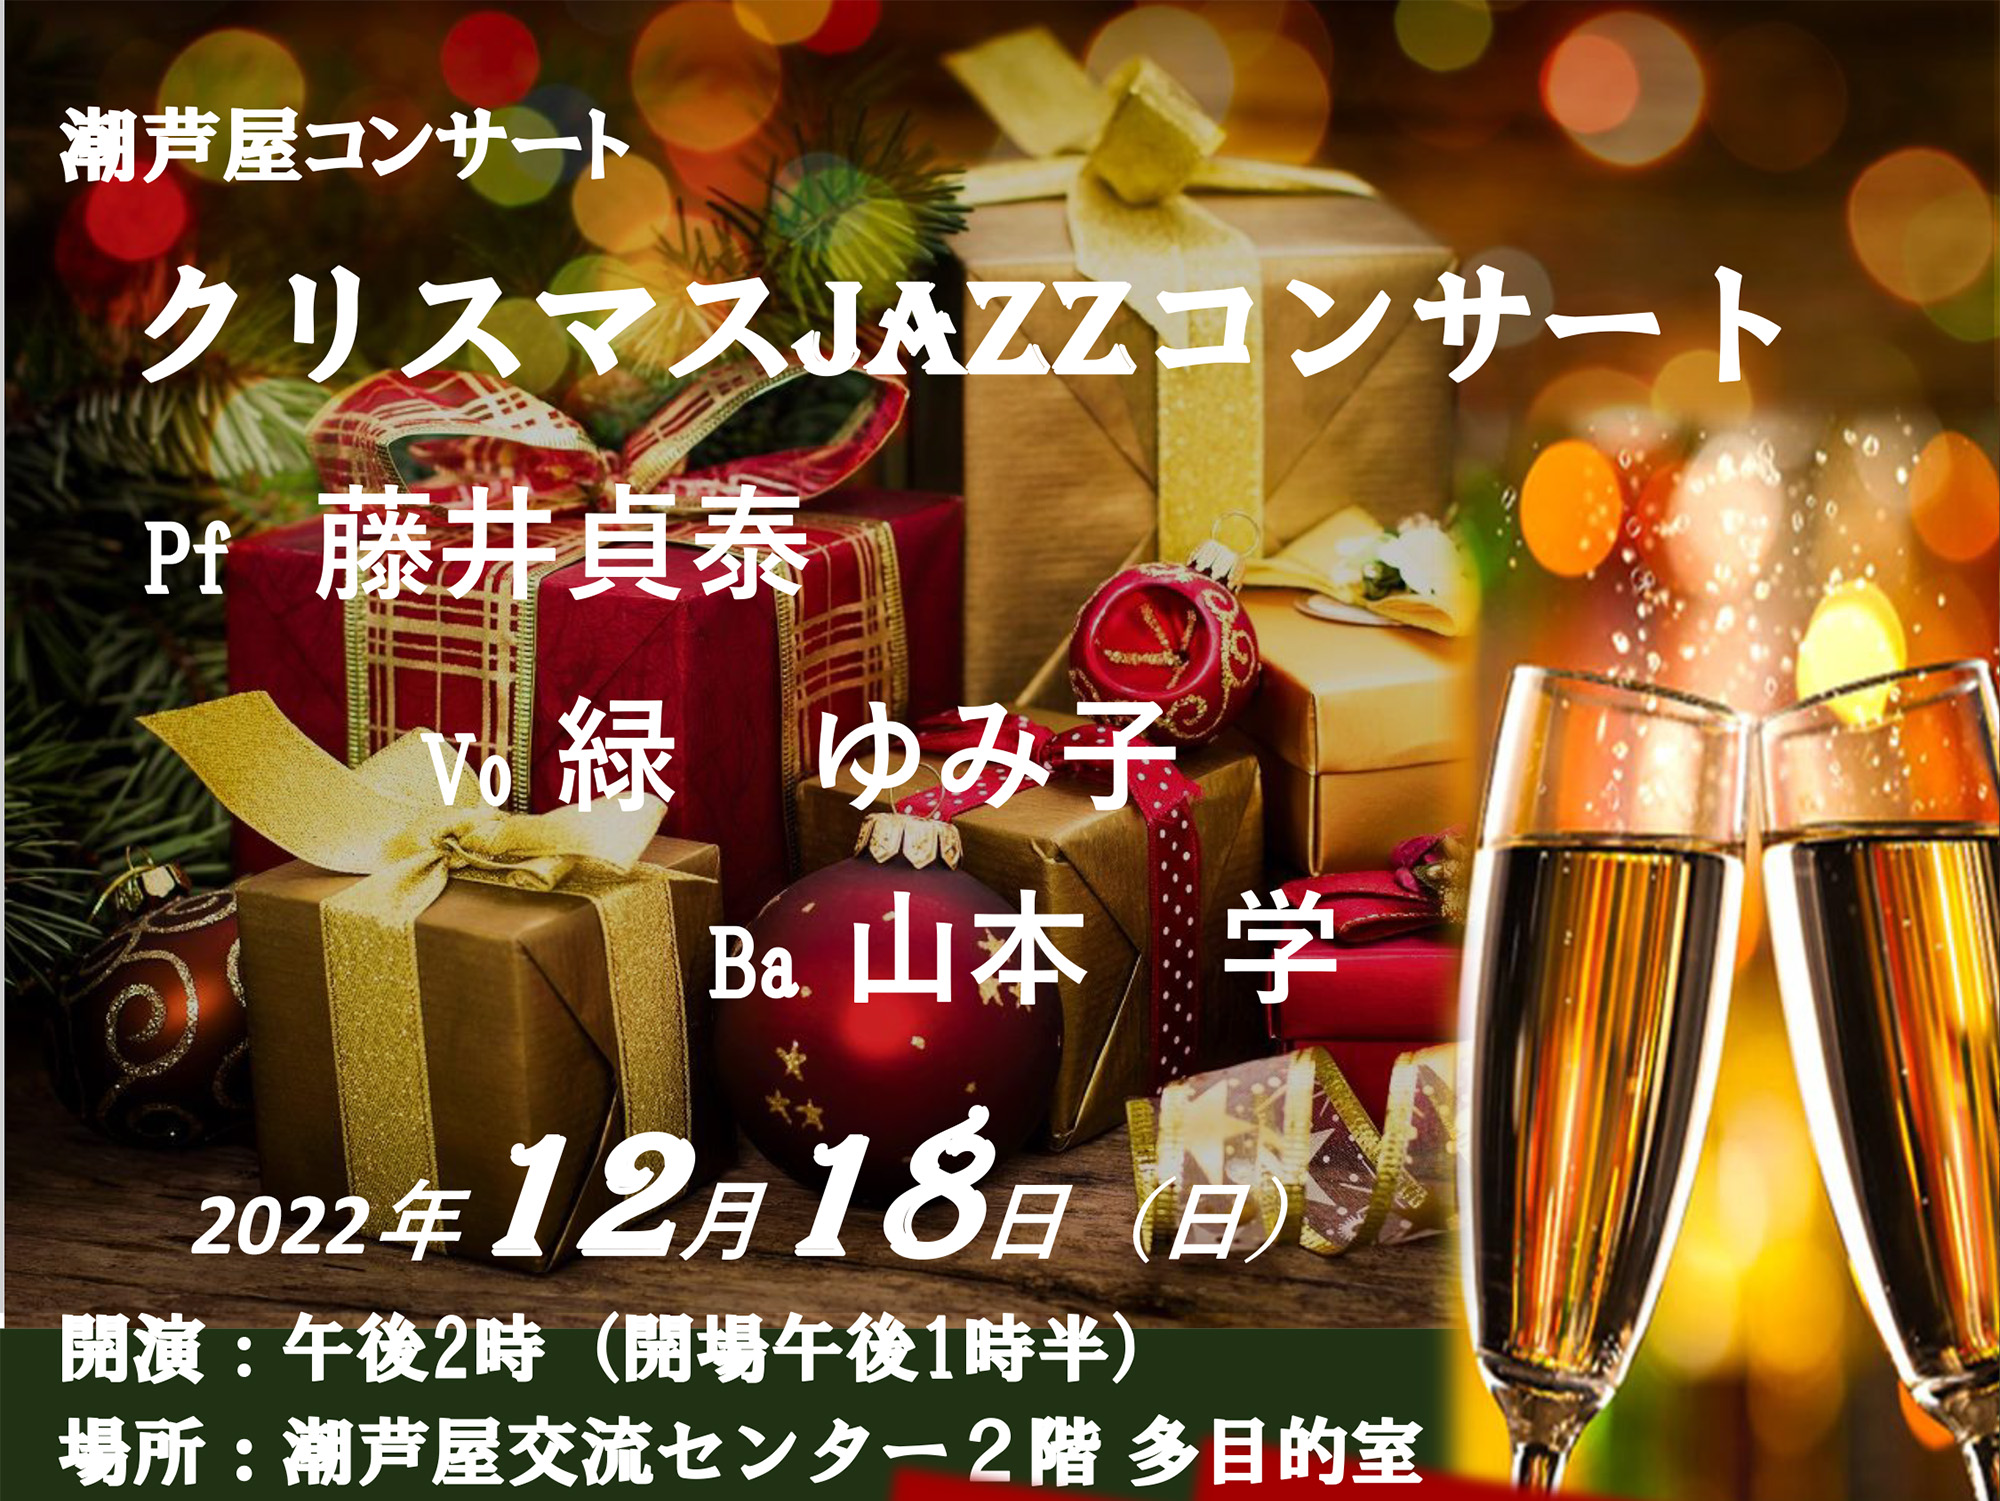 2022年12月18日 潮芦屋コンサート クリスマスJAZZコンサート